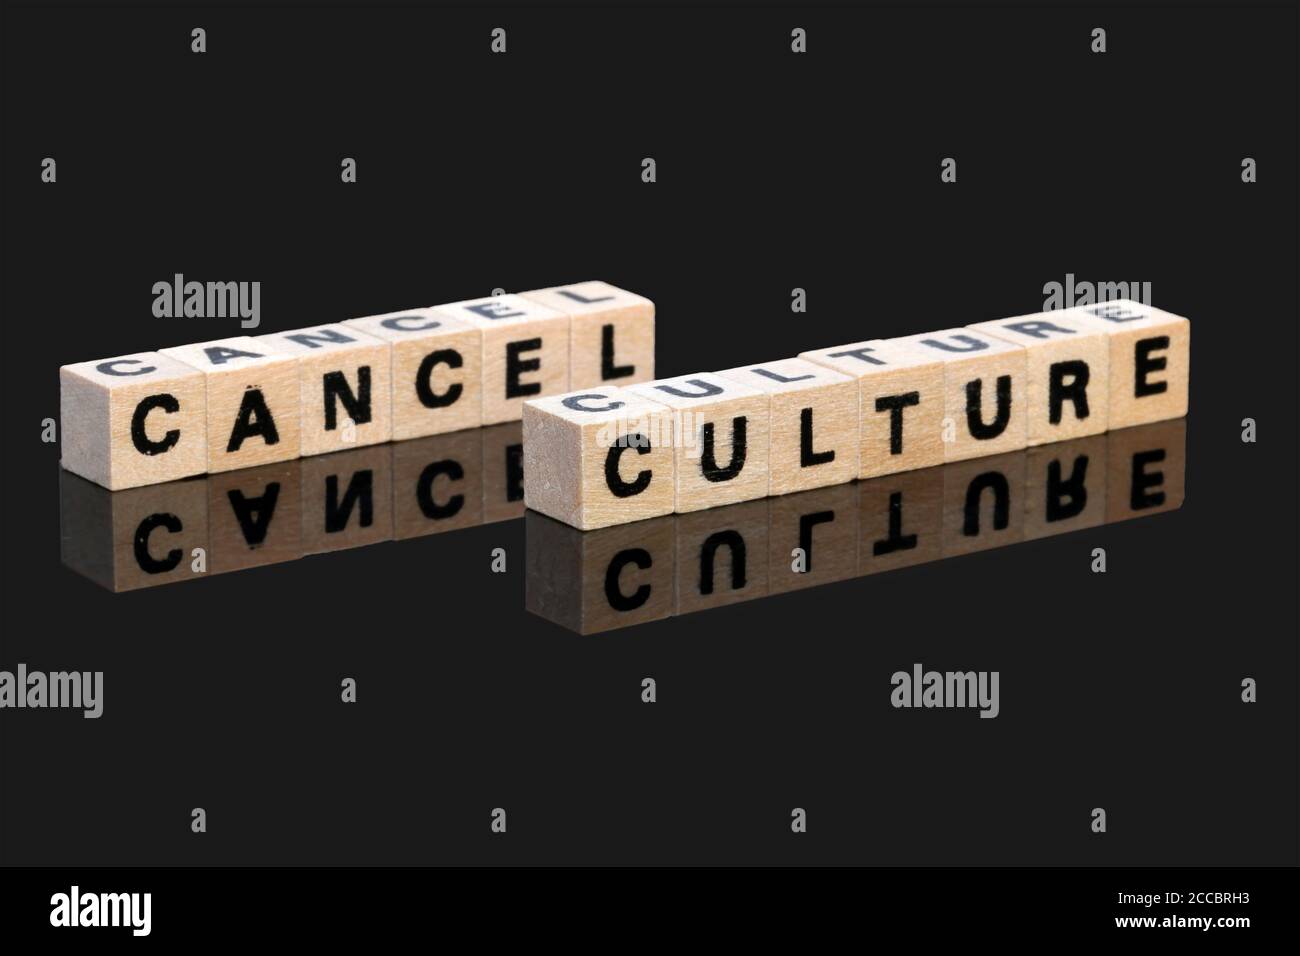 Symbolisches Bild für die Debatte um die sogenannte "Kultur der Abbruchskultur". Buchstabenwürfel zeigen die Worte Cancel Culture auf schwarzem Hintergrund Stockfoto